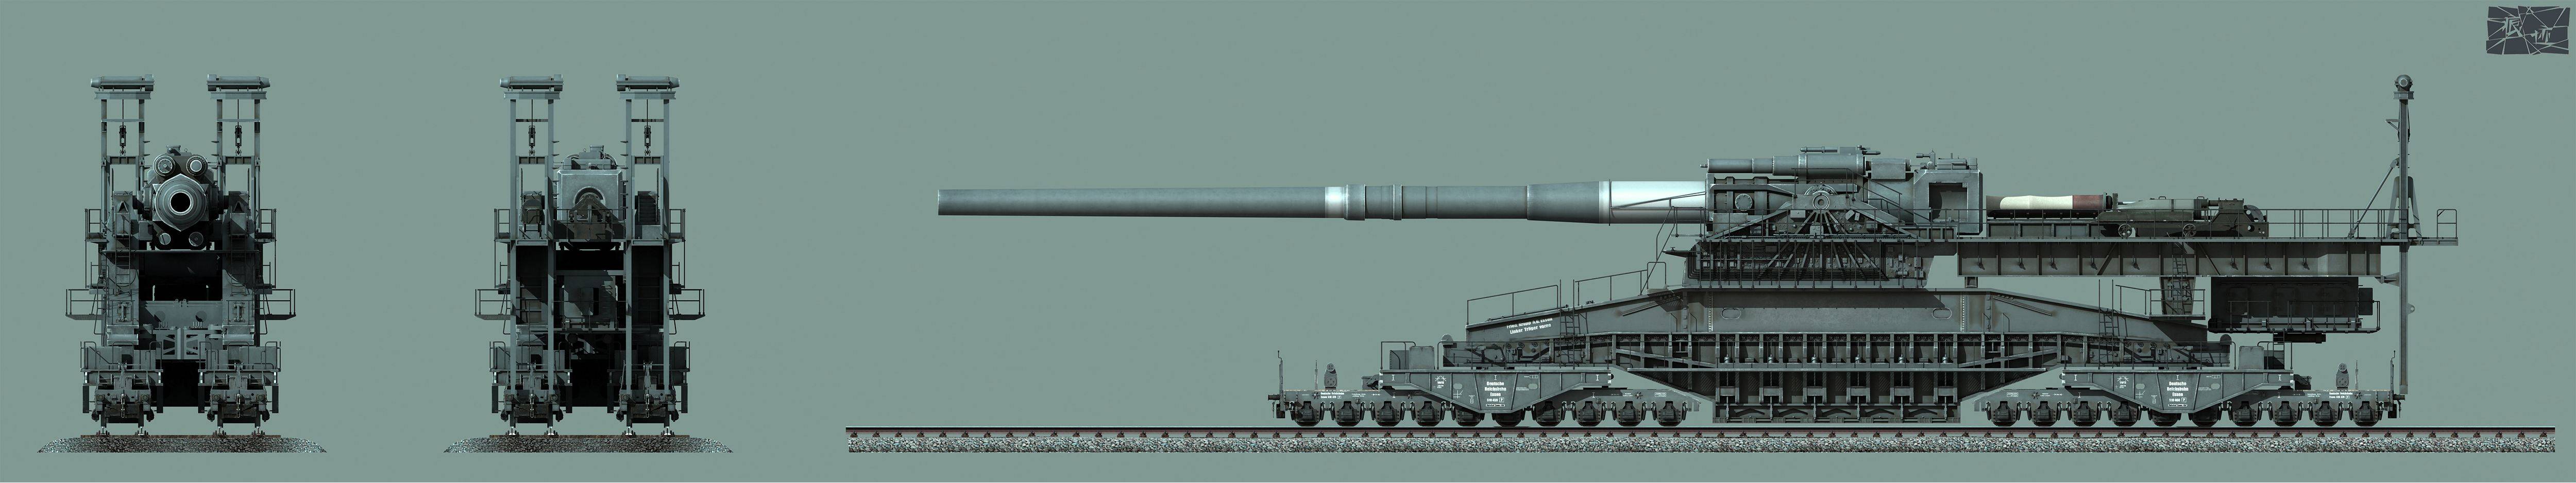 二战时期,古斯塔夫列车炮有着怎样的威力?